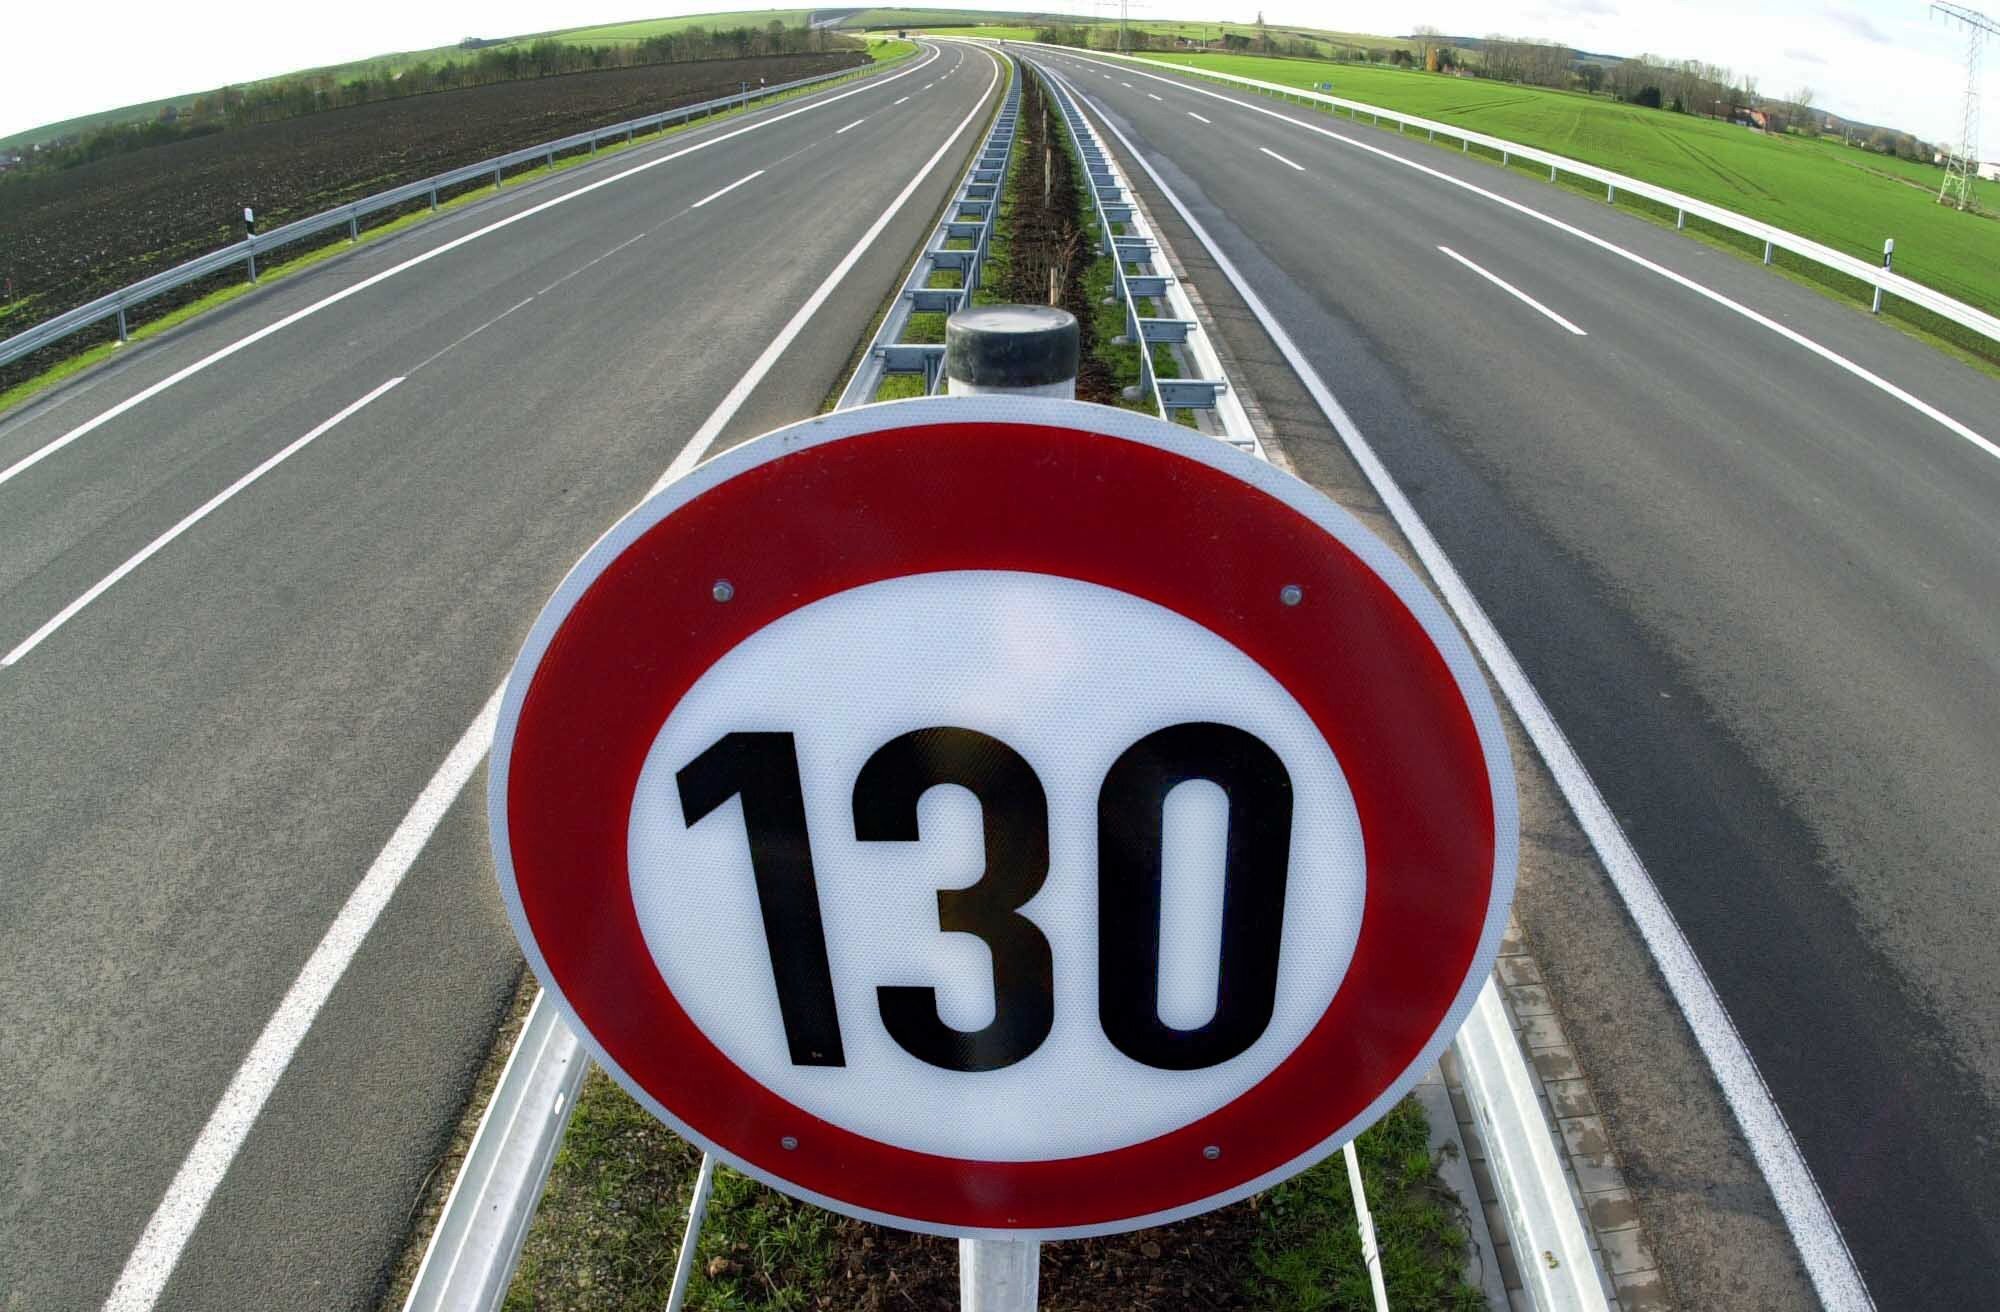 Geschwindigkeitsbegrenzung mit Tempo 130 wird auf einem Schild angezeigt